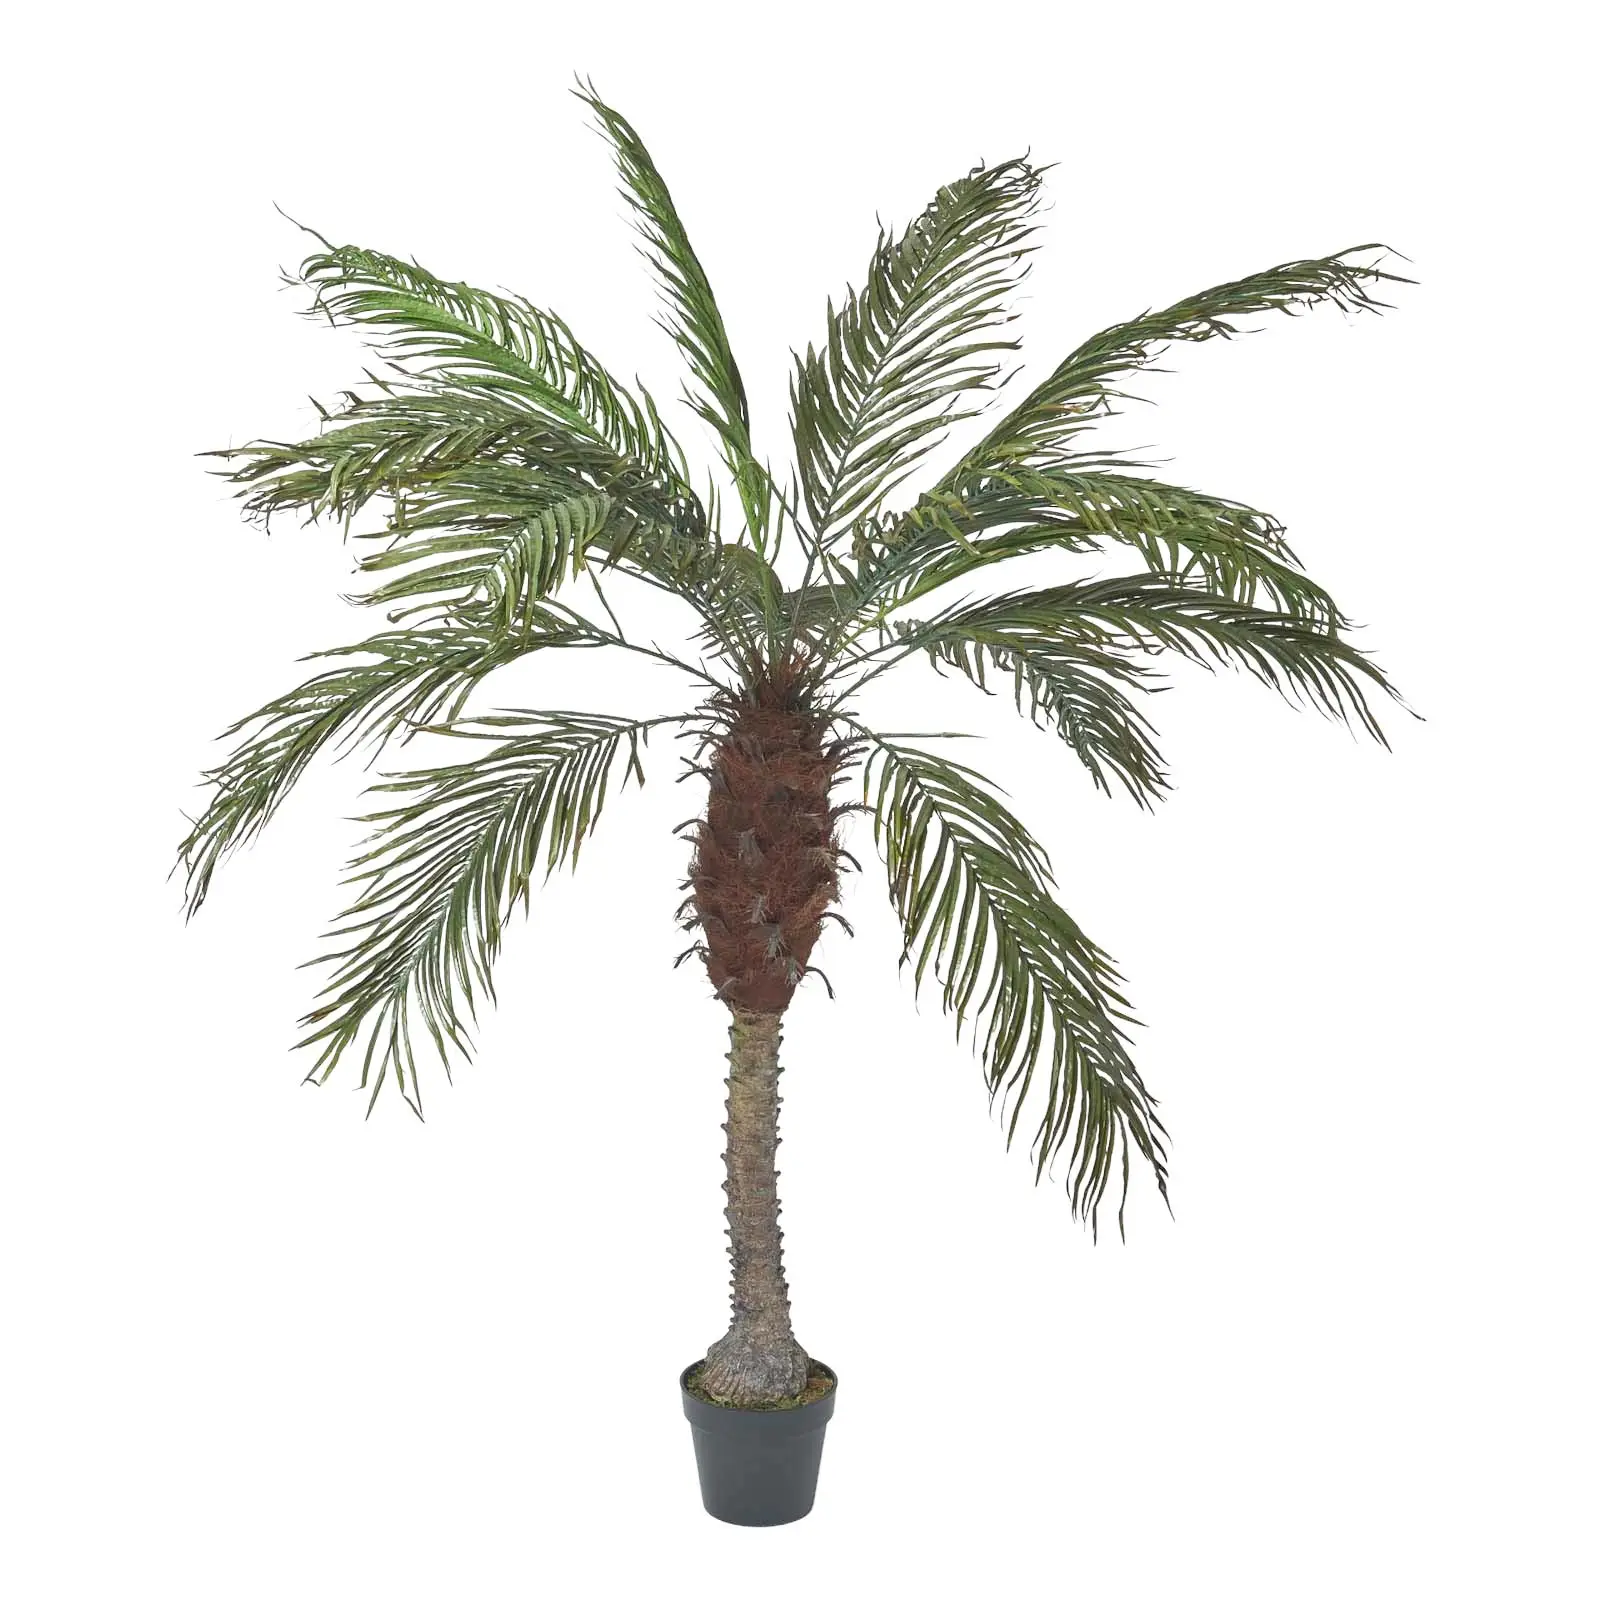 K眉nstliche Phoenix-Palme im Topf 160 cm | Kunstpflanzen